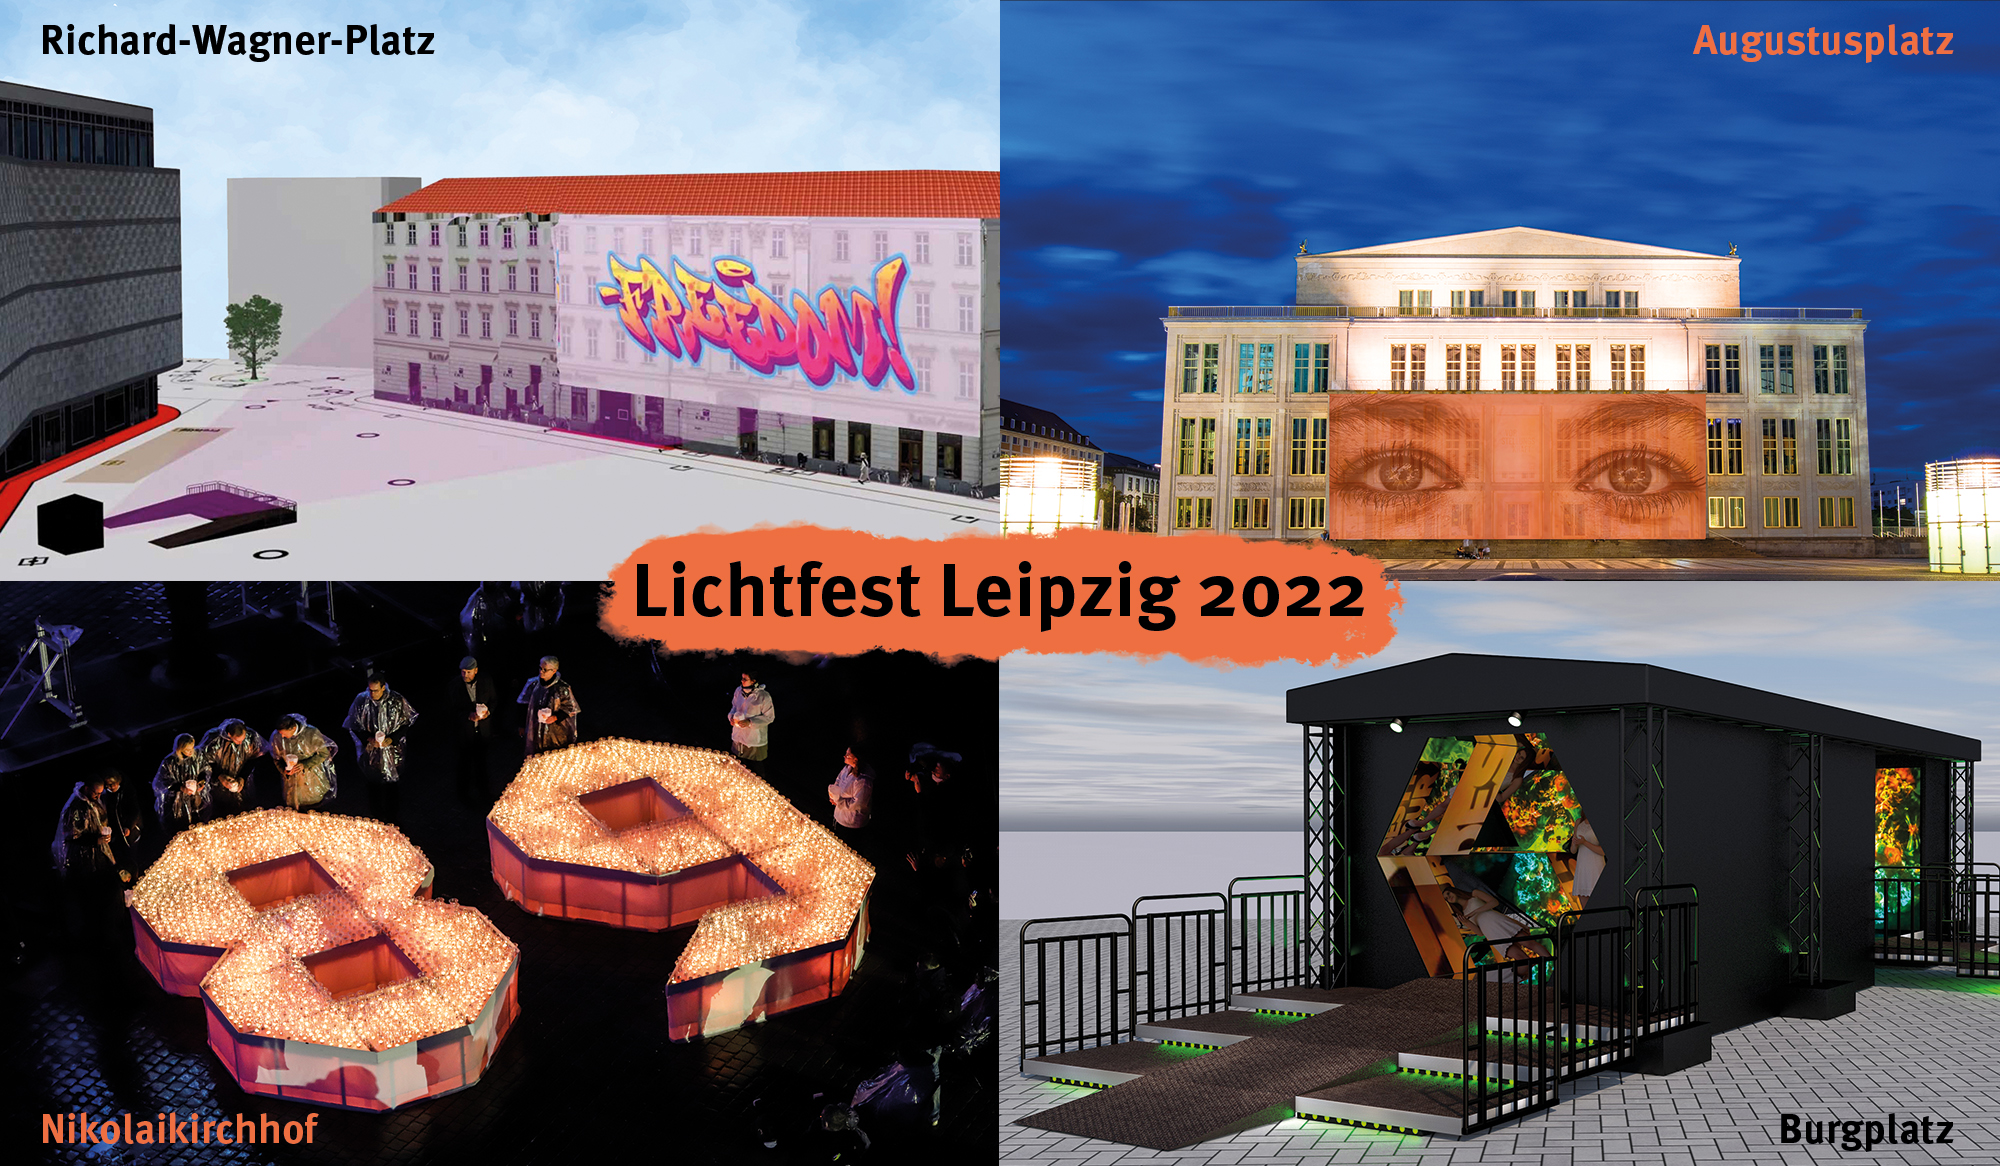 Lichtfest Leipzig 2022 mit drei Lichtinstallationen